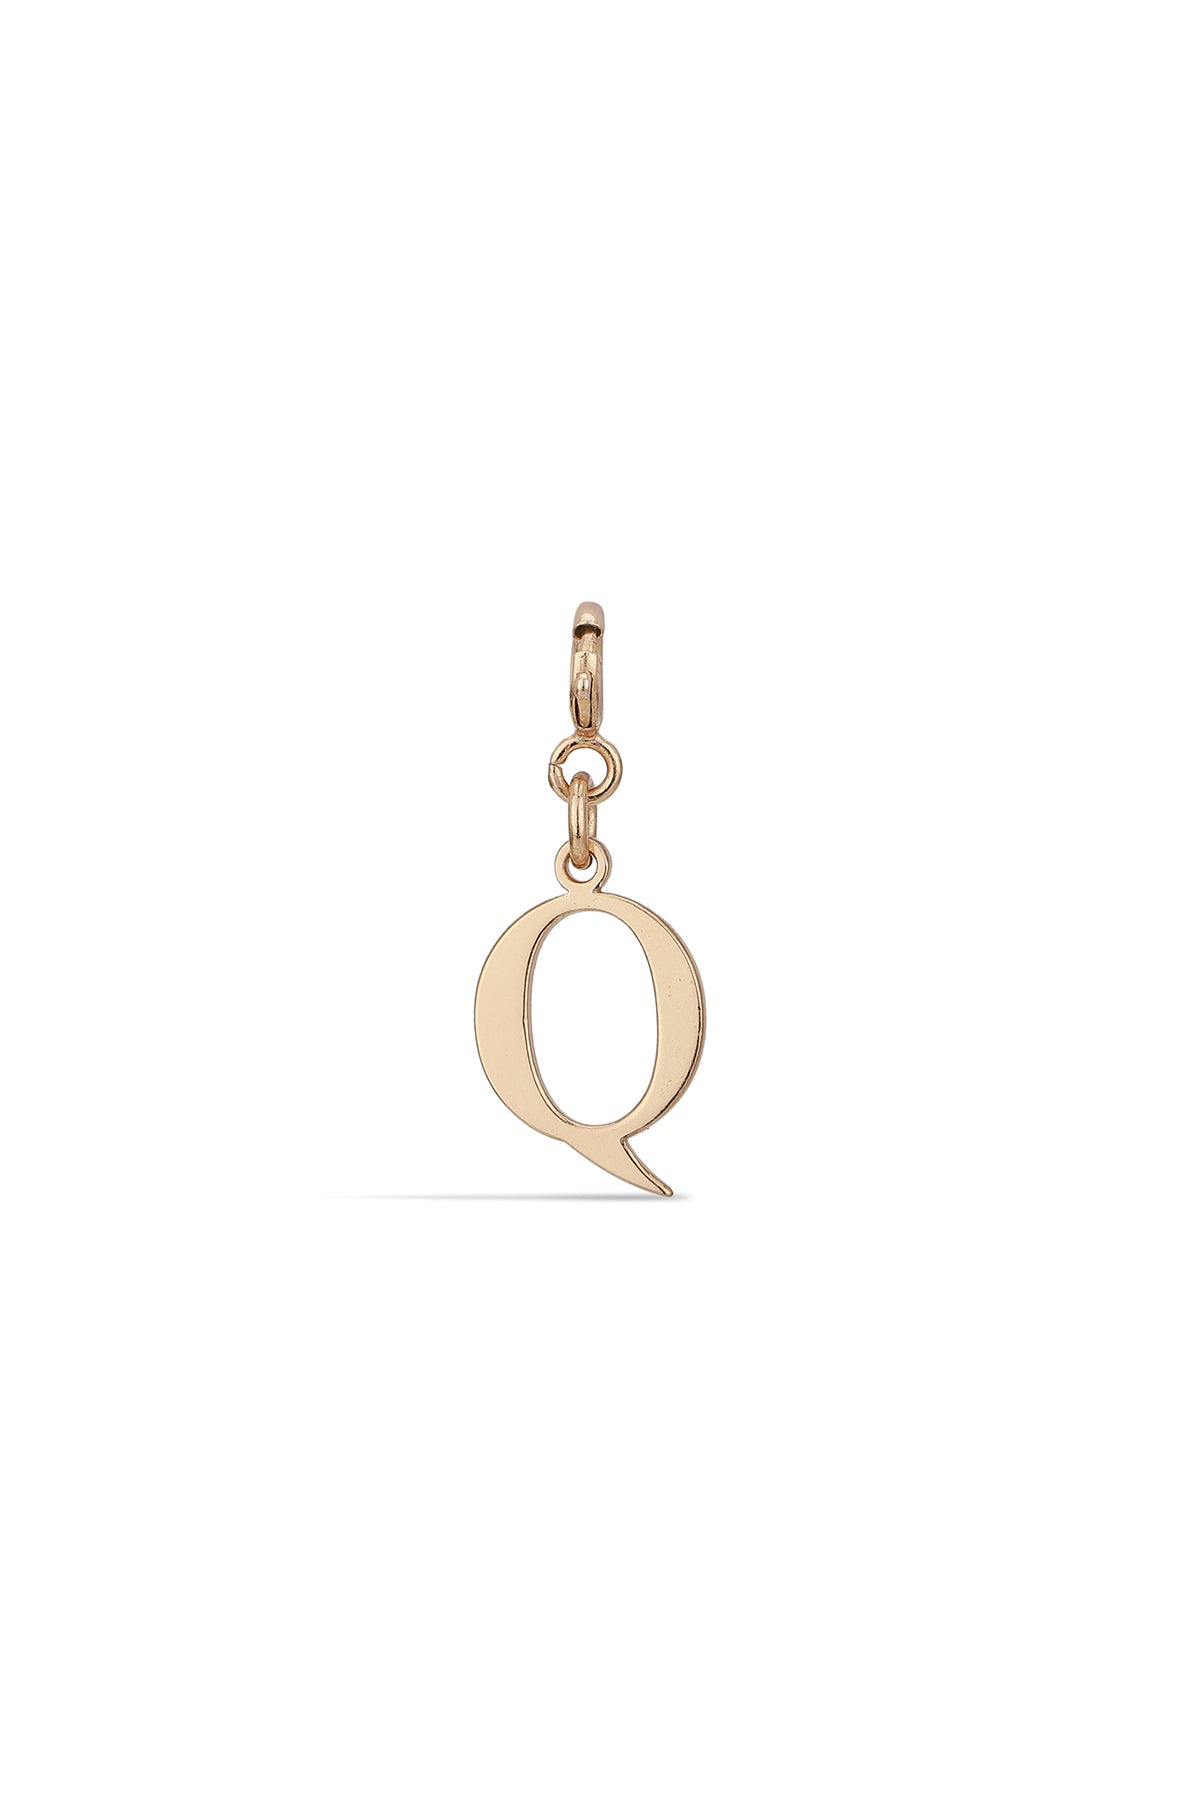 AN-PR-0QG - Gold Alphabet Q